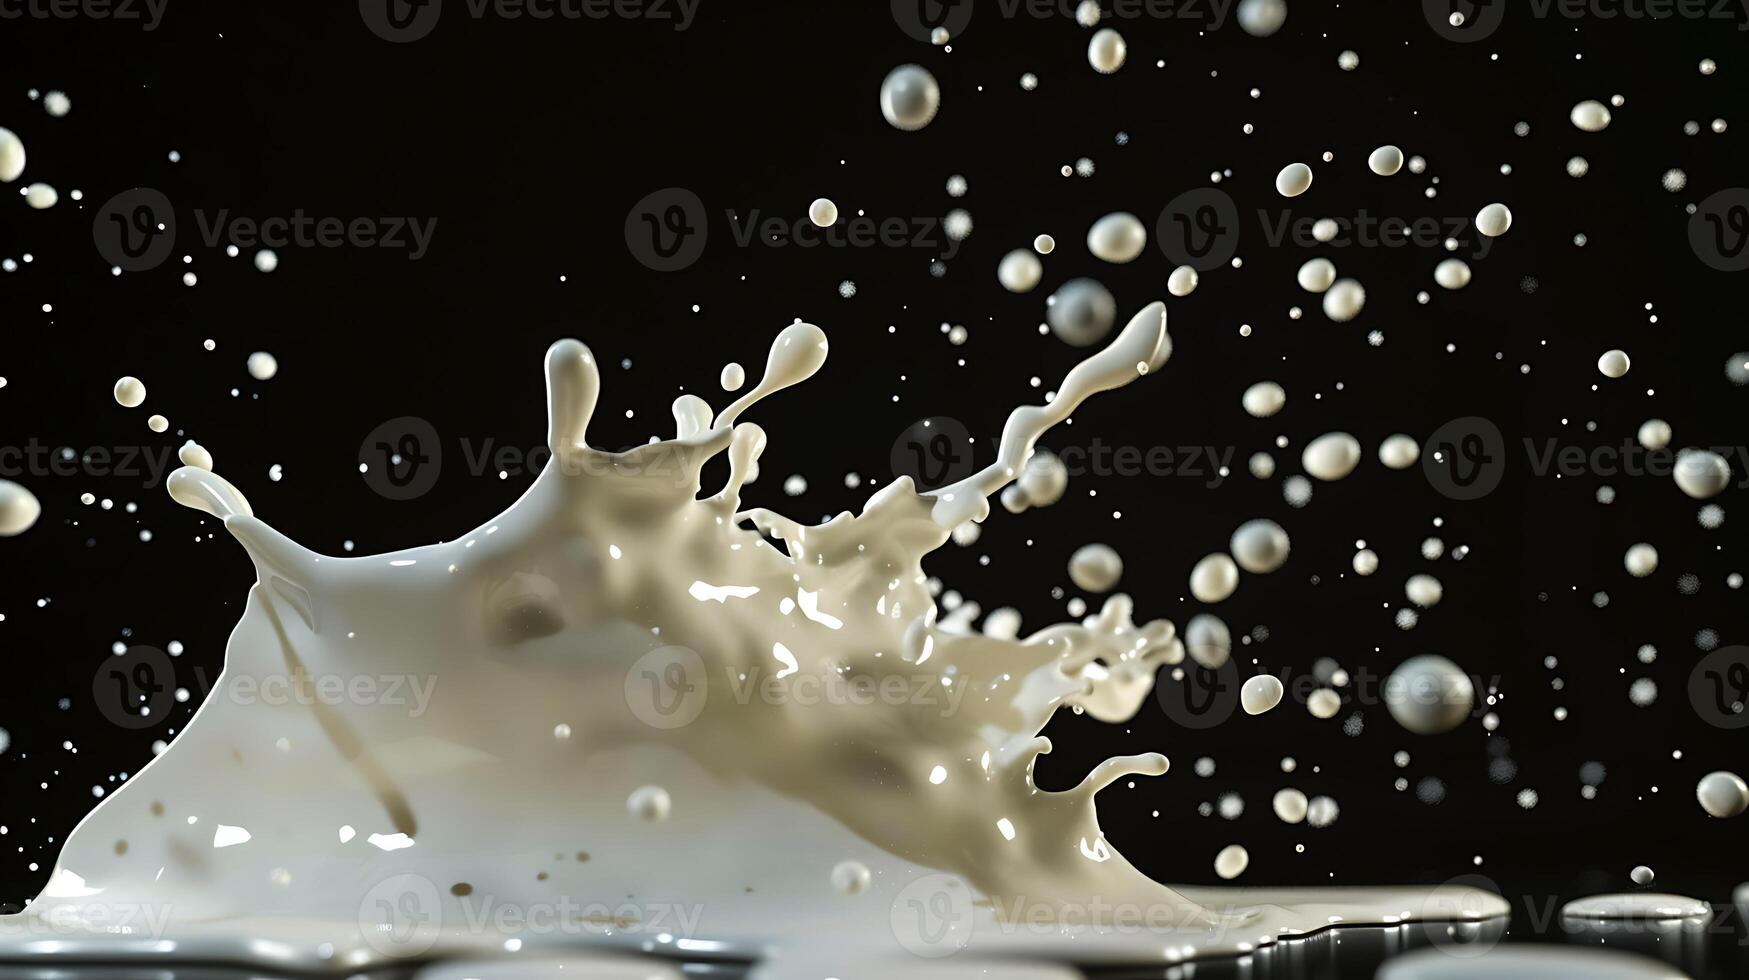 AI generated milk or white liquid splash isolated on black background photo